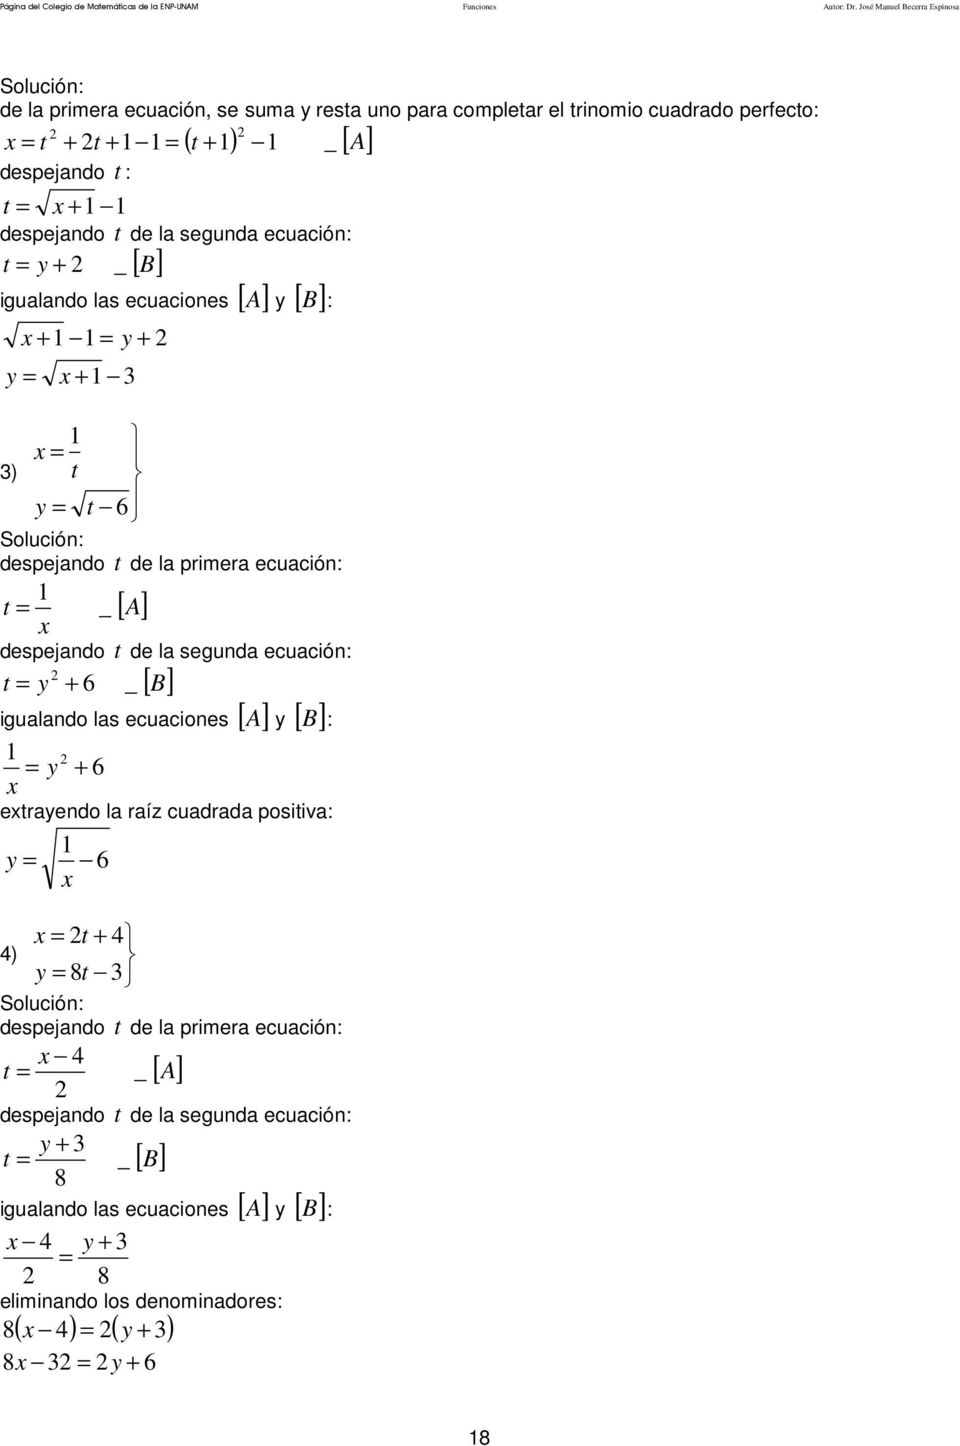 de la seunda ecuación: t + _ [ B] B : iualando las ecuaciones [ A ] [ ] + + + ) t t 6 despejando t de la primera ecuación: t _ [ A] despejando t de la seunda ecuación: t +